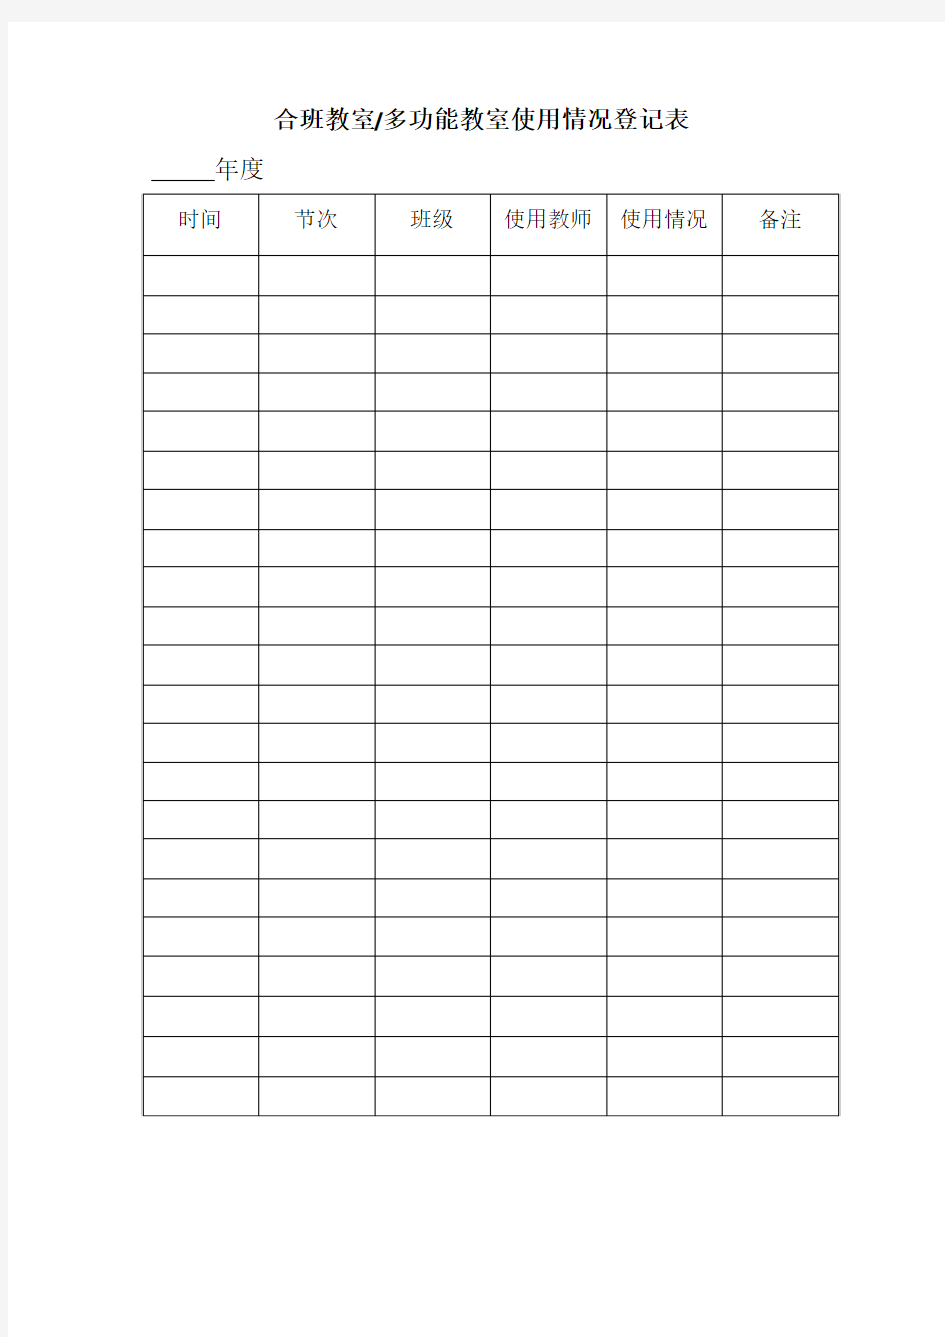 合班教室 多功能教室使用情况登记表